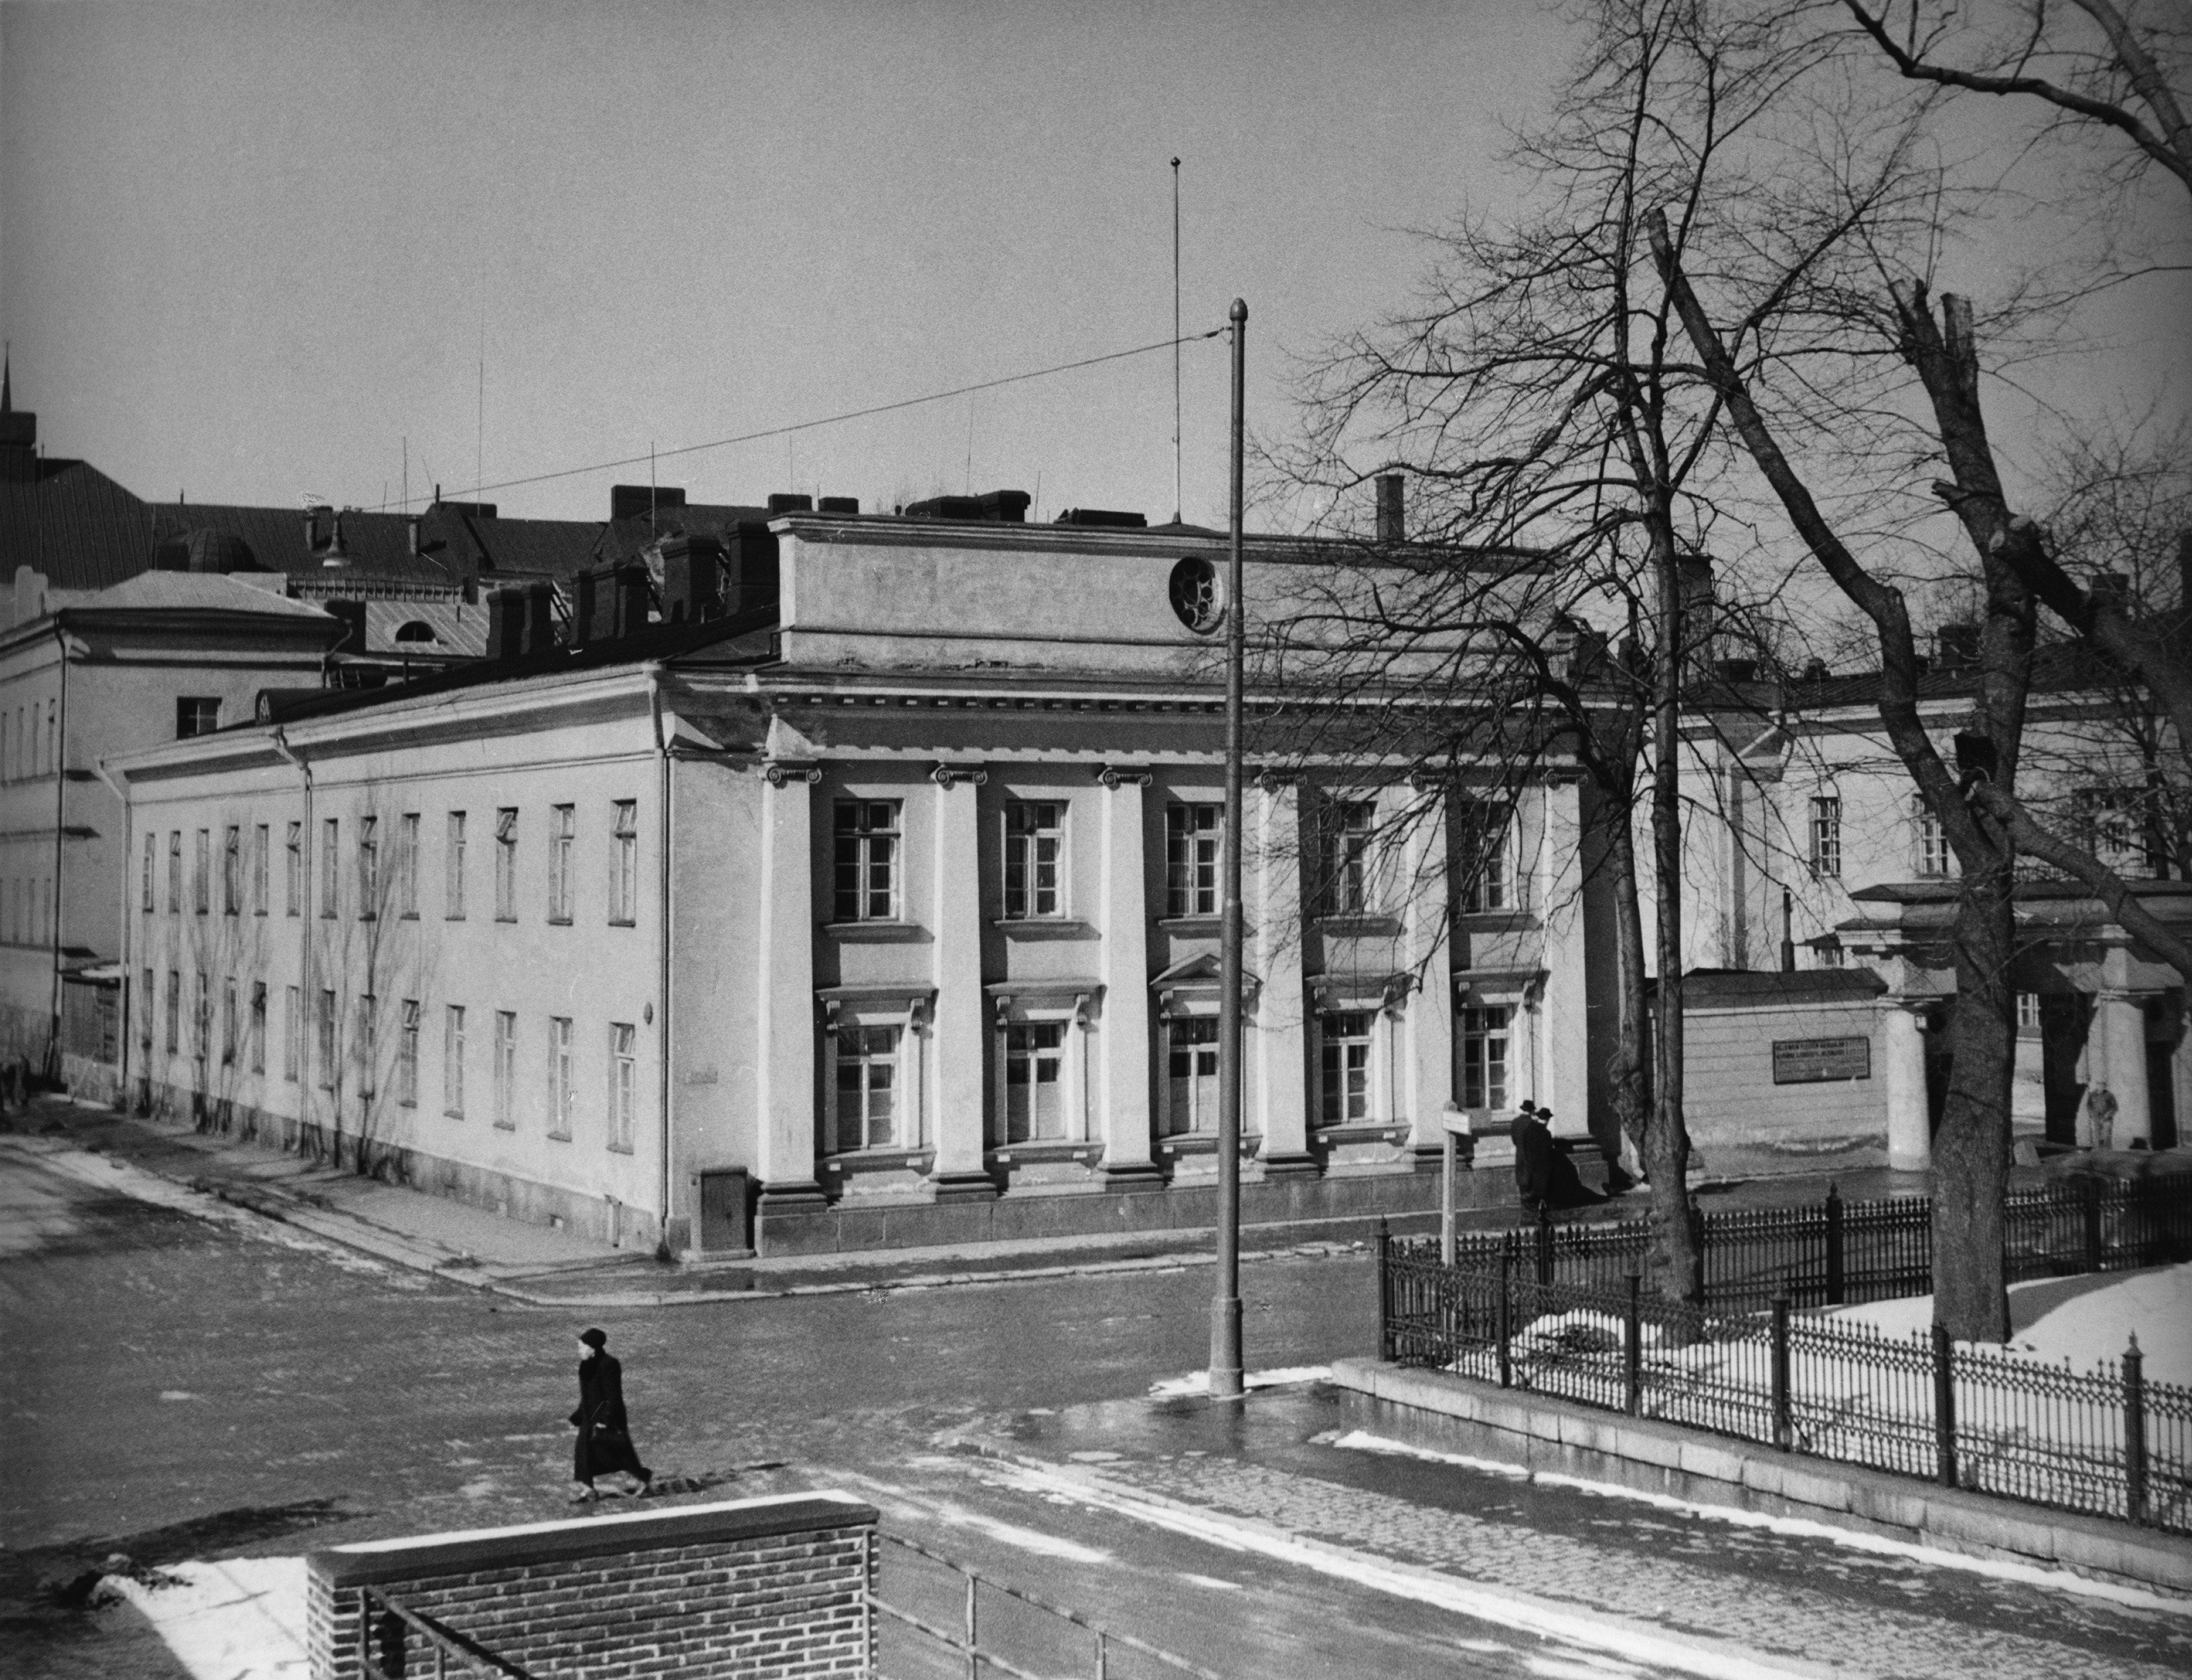 Helsingin yleinen sairaala, II osastaryhmä. C. L. Engelin piirtämä rakennus valmistui 1824. Rakennus sijaitsee Unioninkadun ja Kirkkokadun kulmassa, kuvan oikeassa alaosassa Pyhän kolminaisuuden kirkon puistikkoa, Uninoninkatu 31.